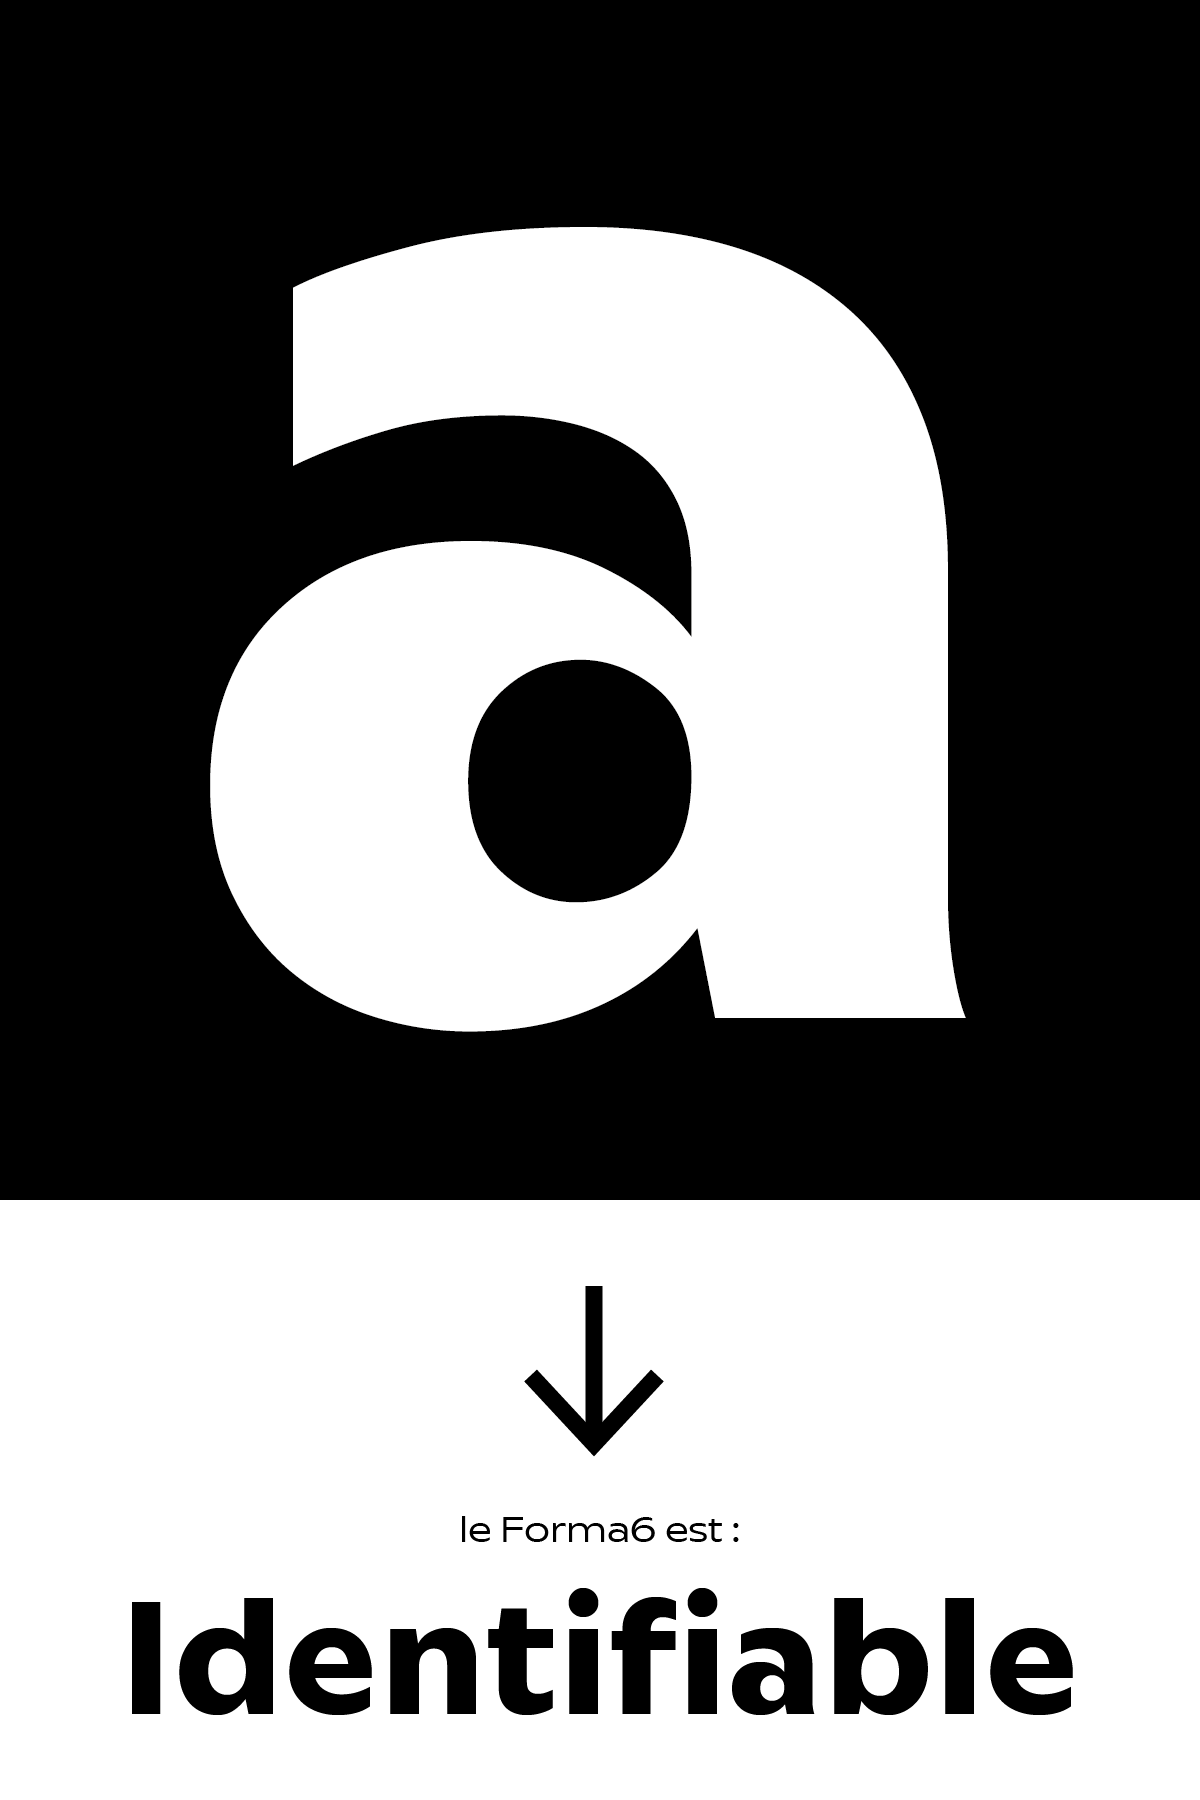 Le forma6 est un caractère typographique facilement identifiable